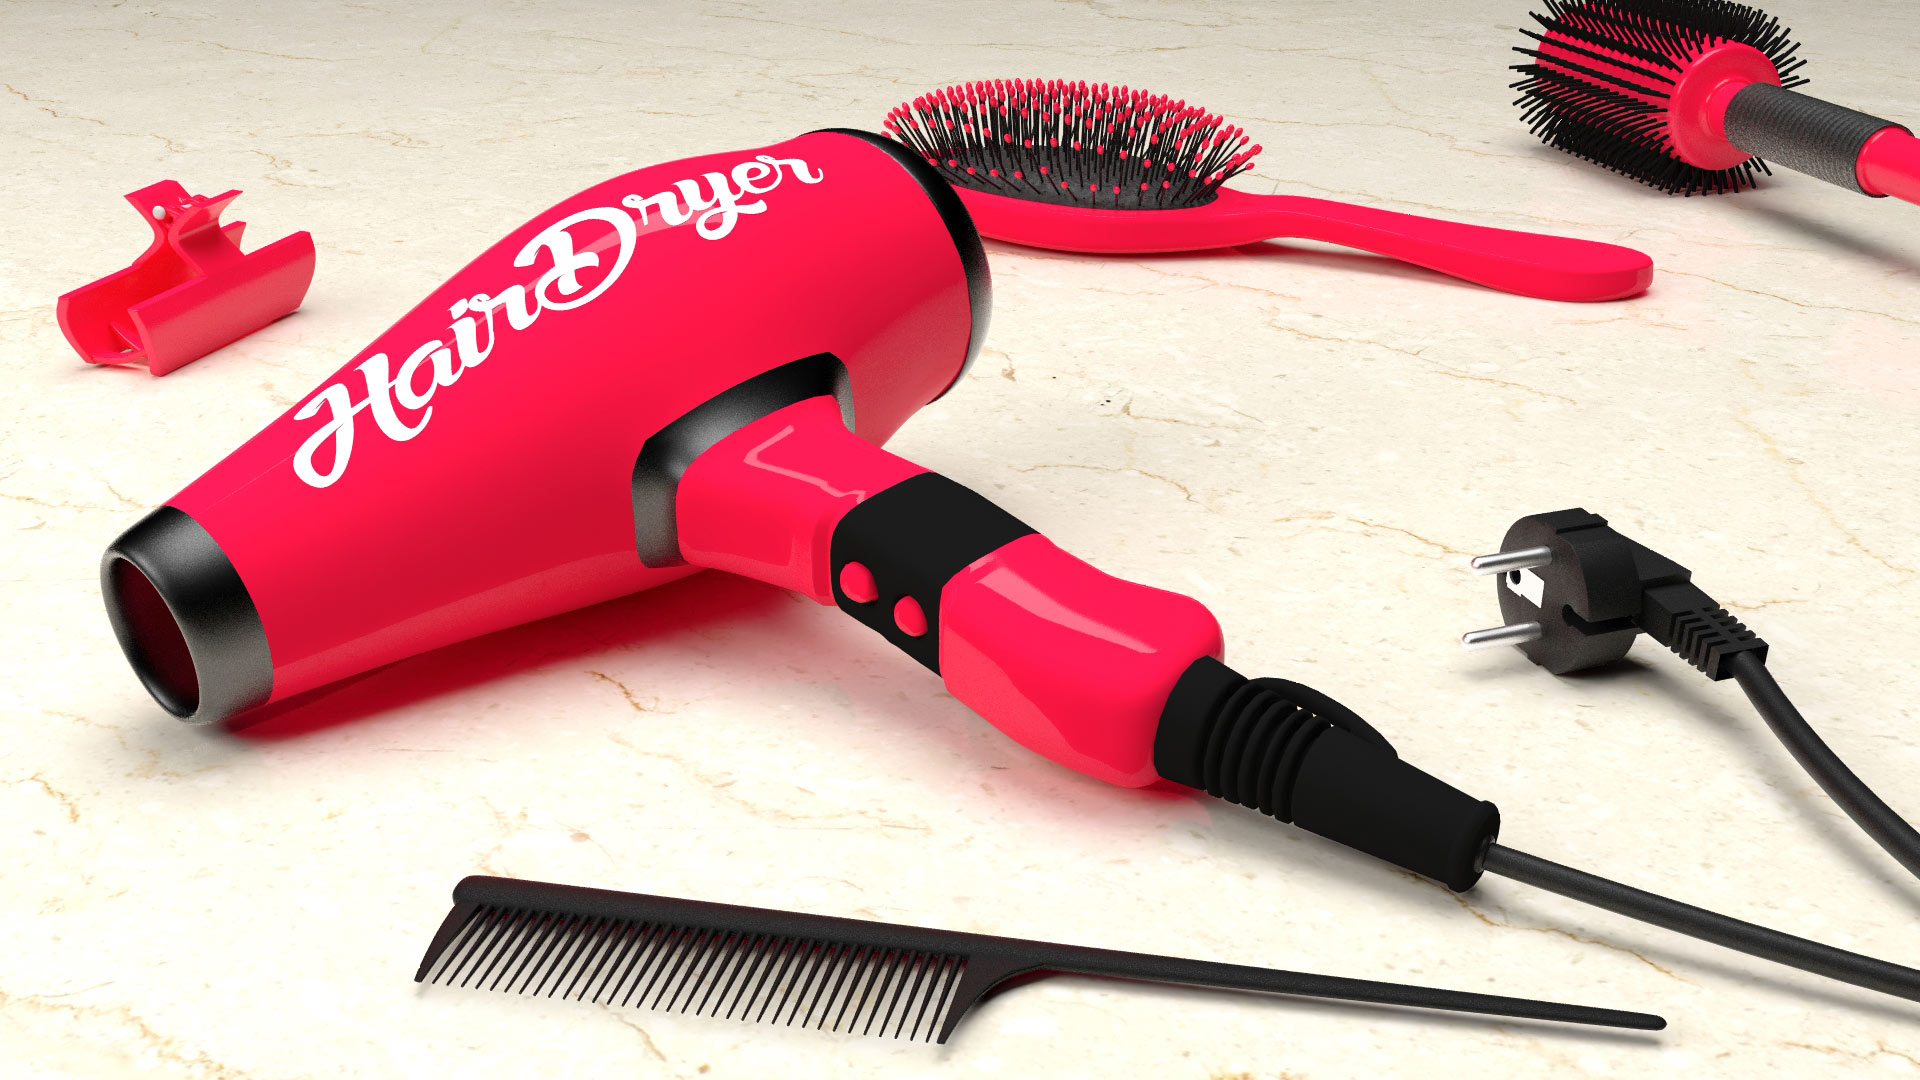 salon de coiffure : Modélisation 3d d'objets et de produits d'hygiène par Graphiste 3d Designer freelance  